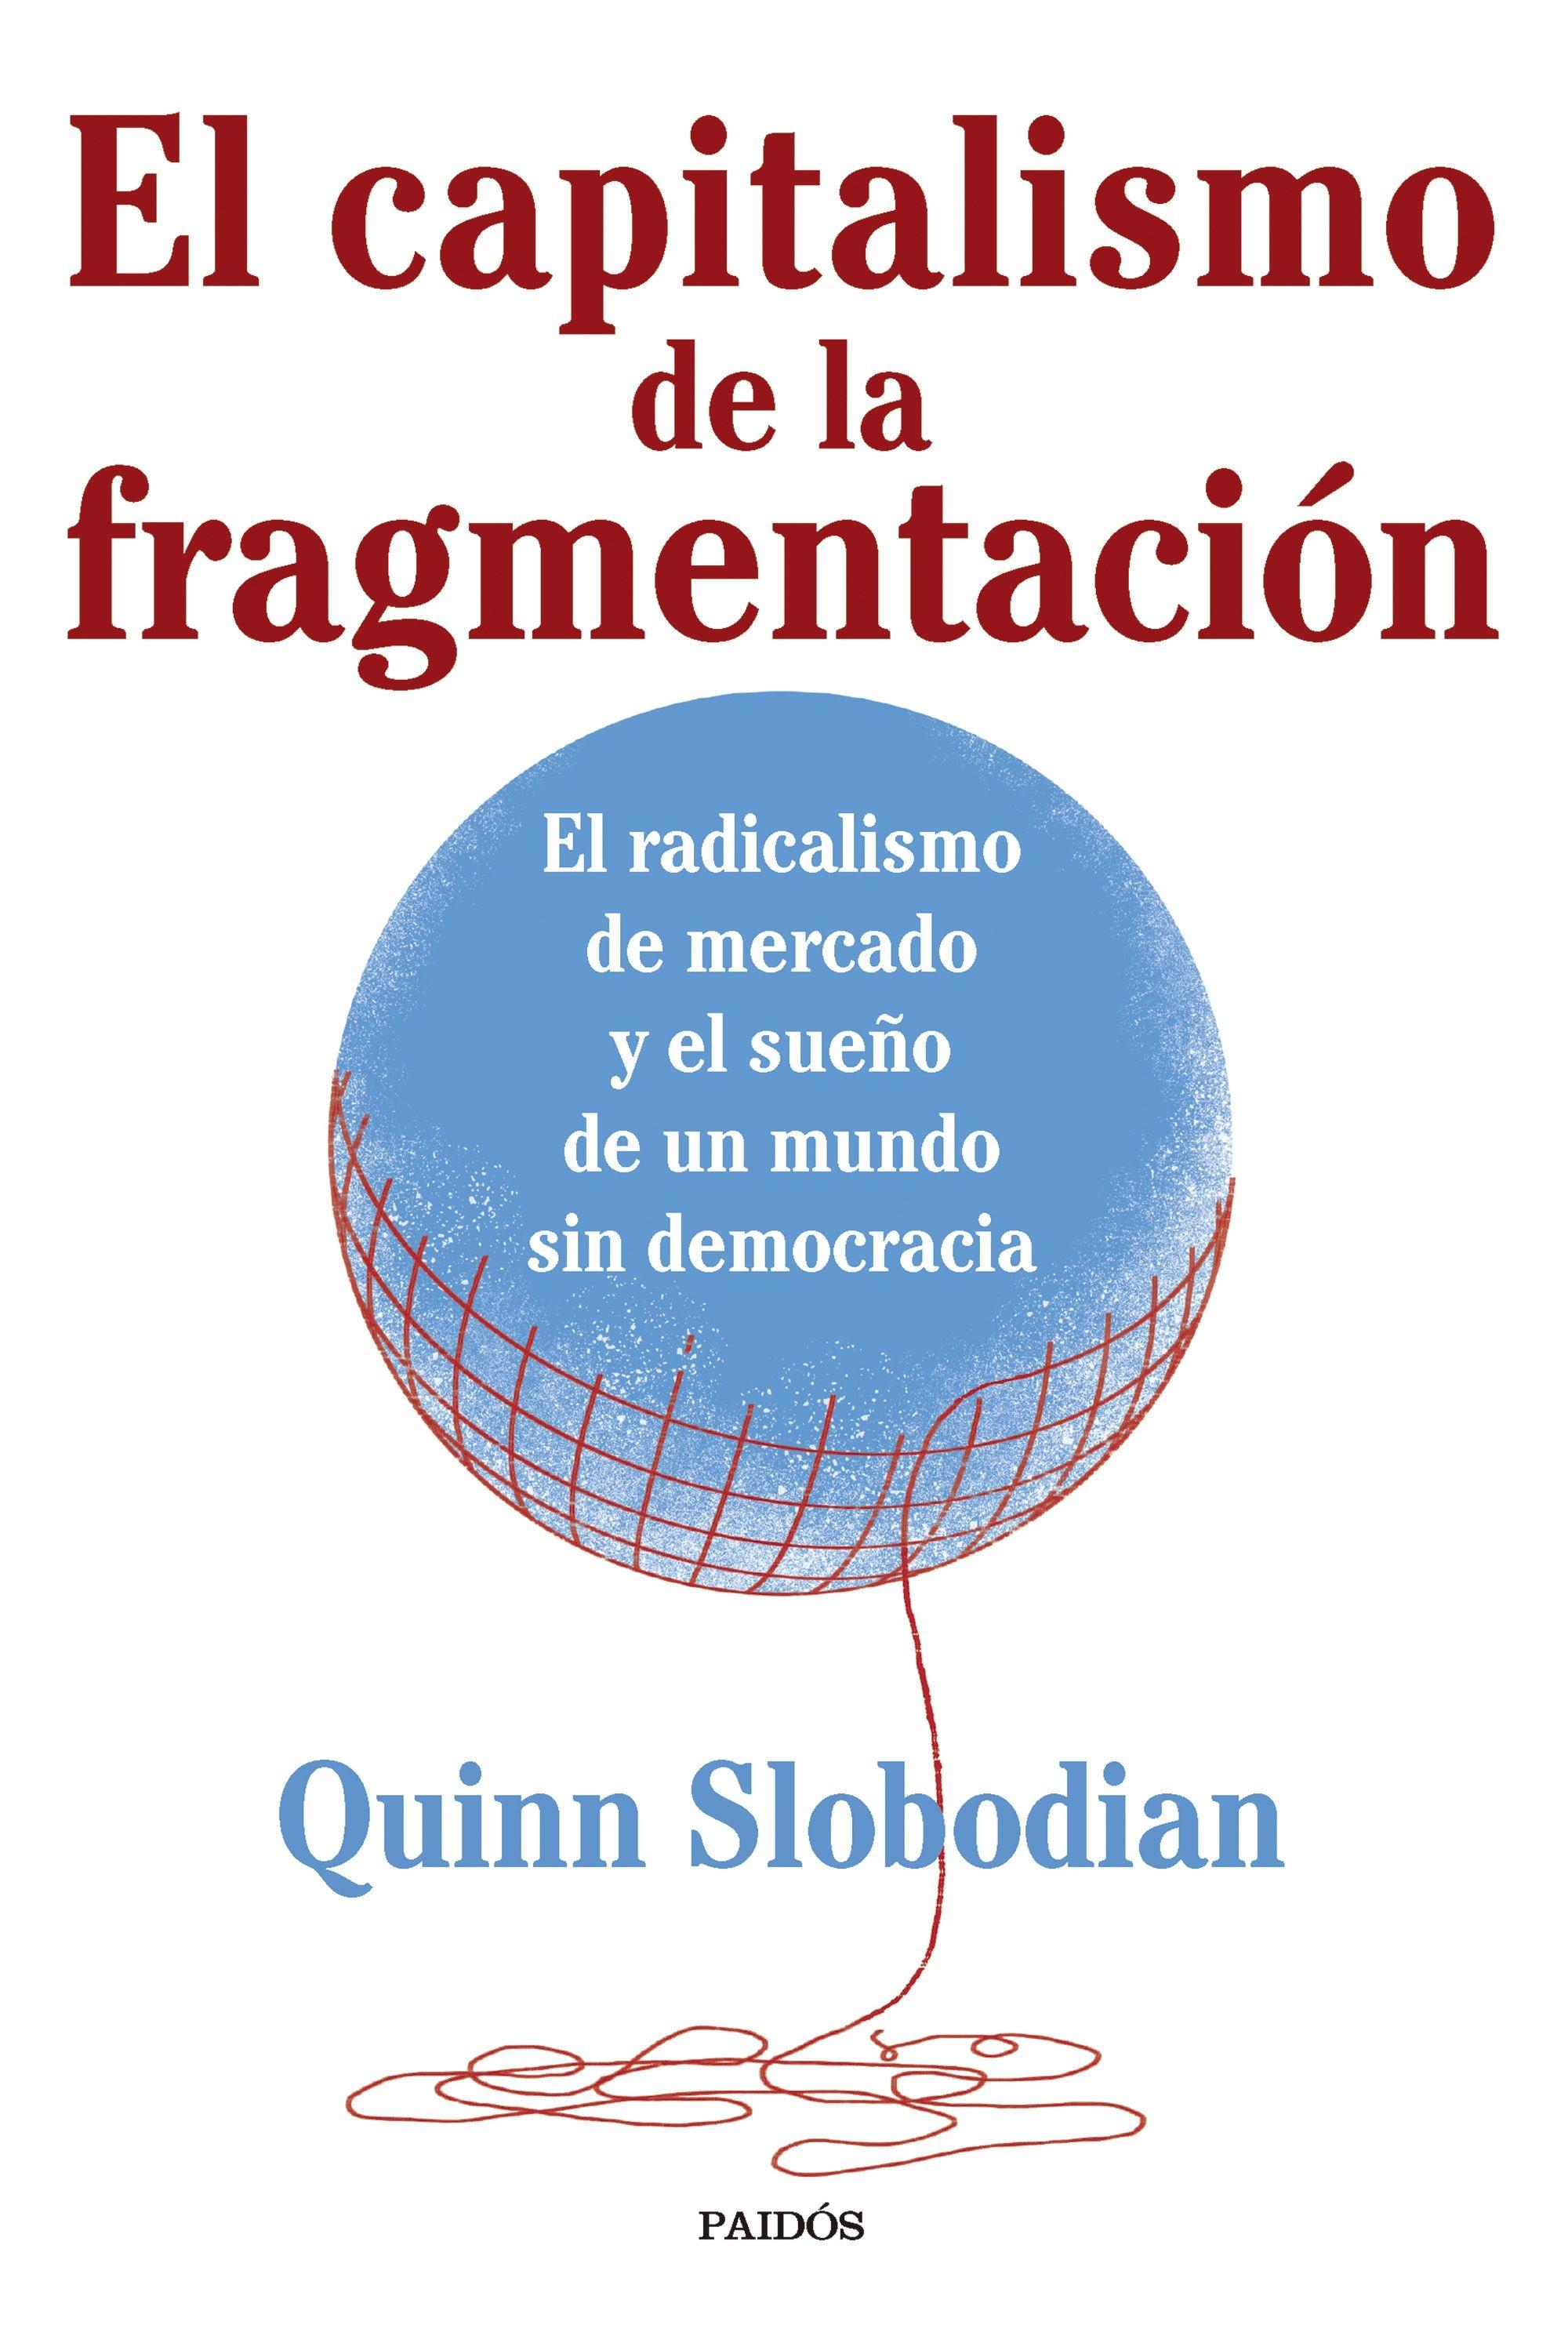 Capitalismo de la fragmentación, El "El radicalismo de mercado y el sueño de un mundo sin democracia"